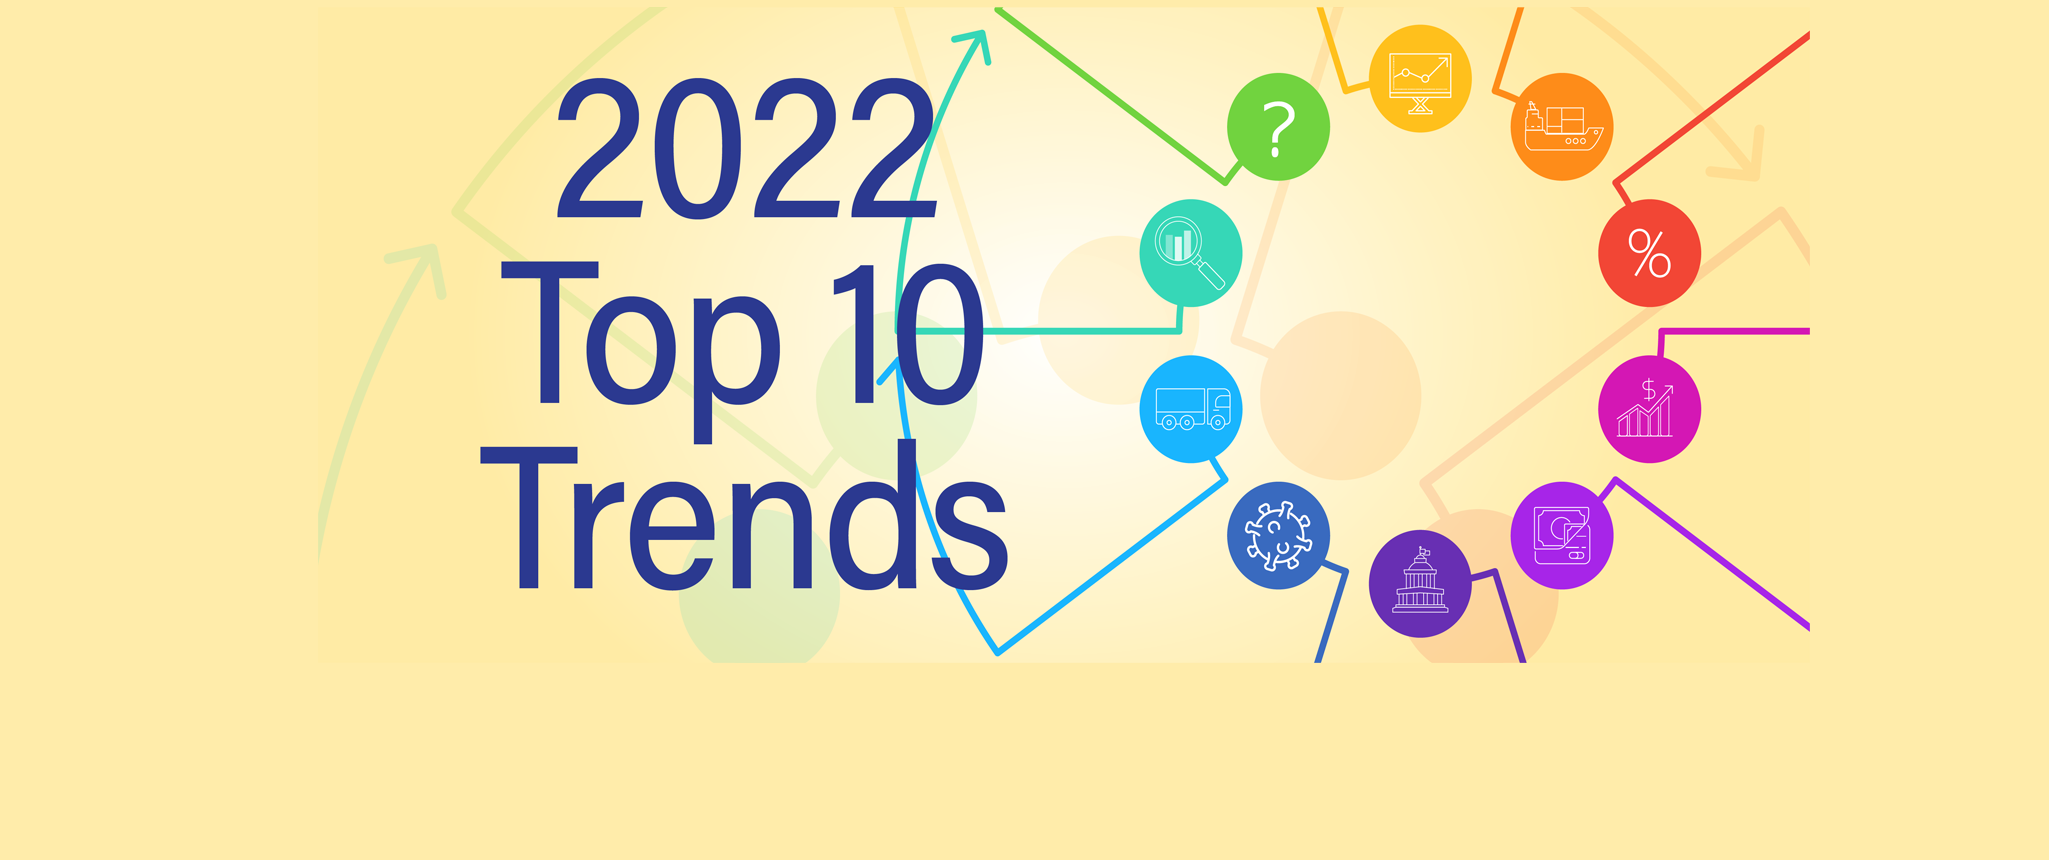 Top Ten Trends 2022